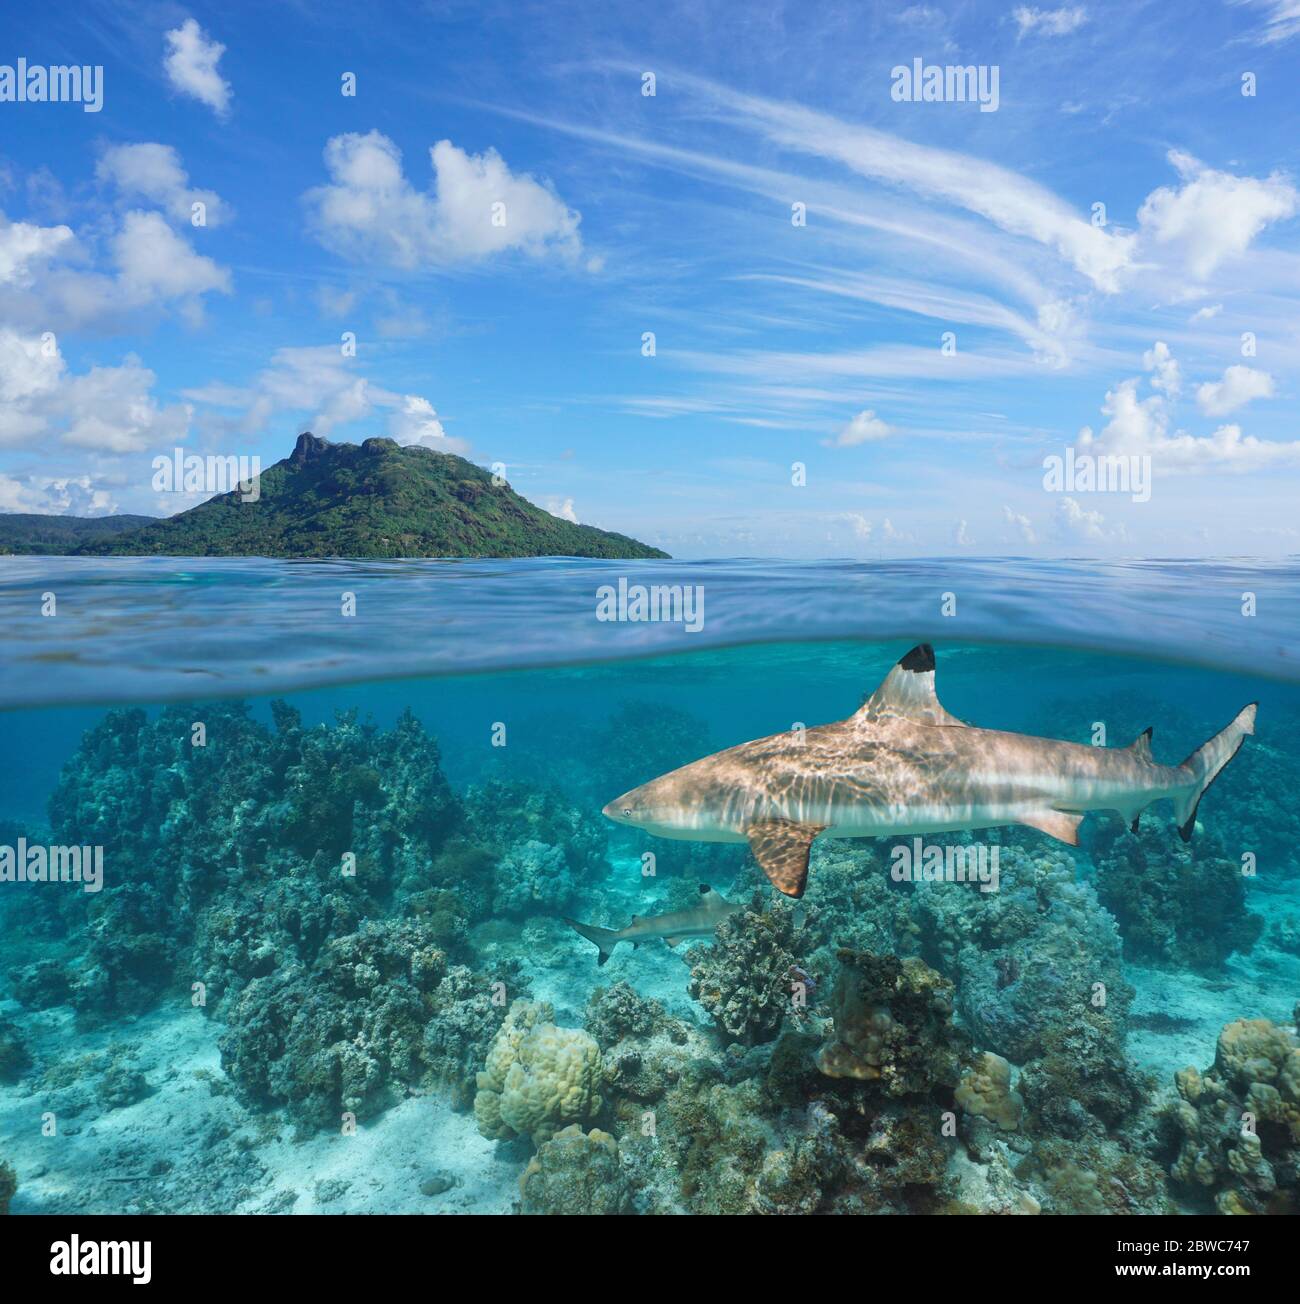 Mare tropicale, isola con squalo della barriera corallina nera sott'acqua, vista divisa sopra sotto la superficie dell'acqua, Polinesia francese, Huahine, oceano Pacifico, Oceania Foto Stock